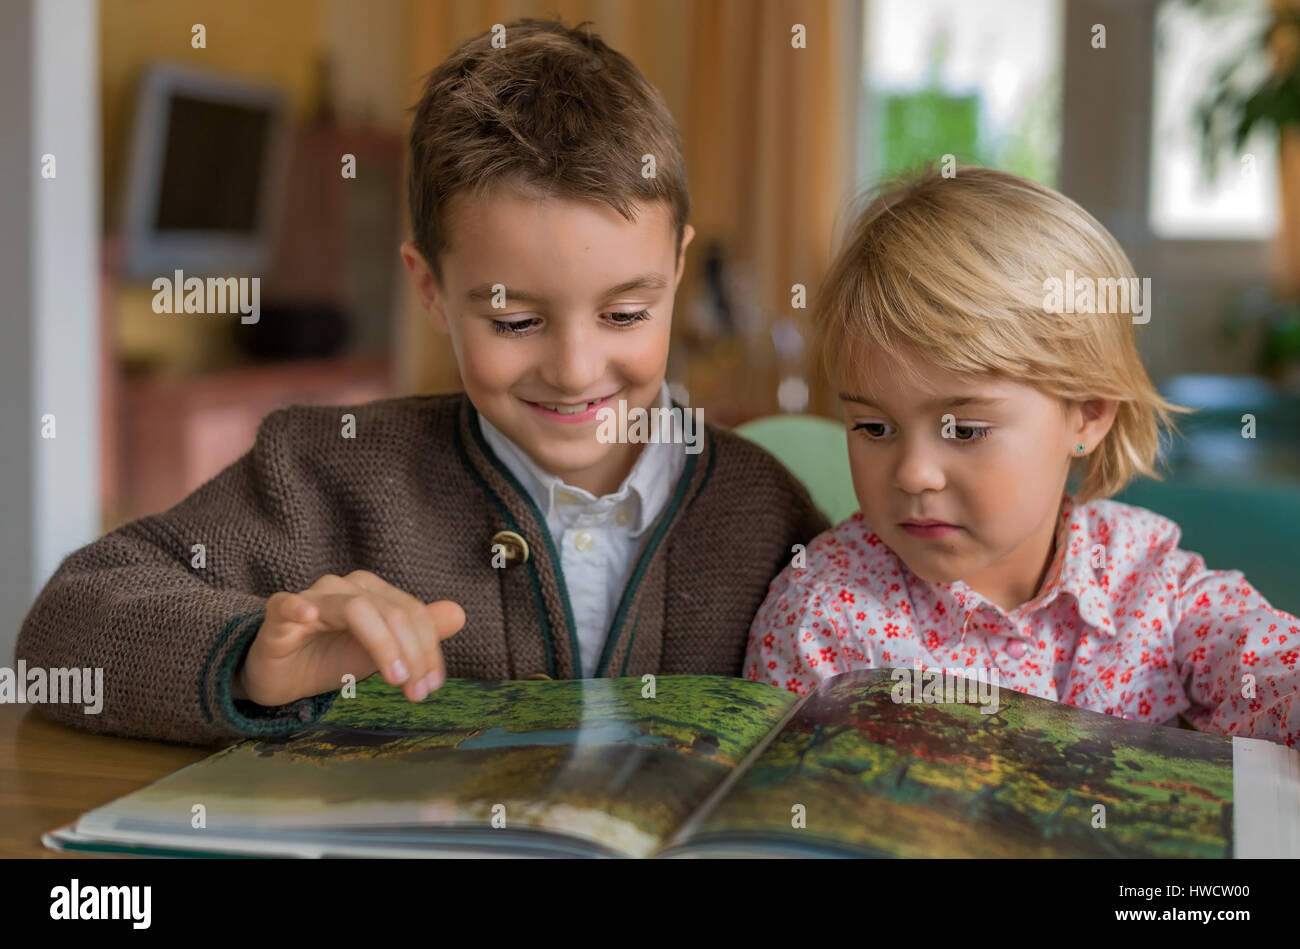 Two children have a look together at a book, Zwei Kinder sehen sich zusammen ein Buch an Stock Photo